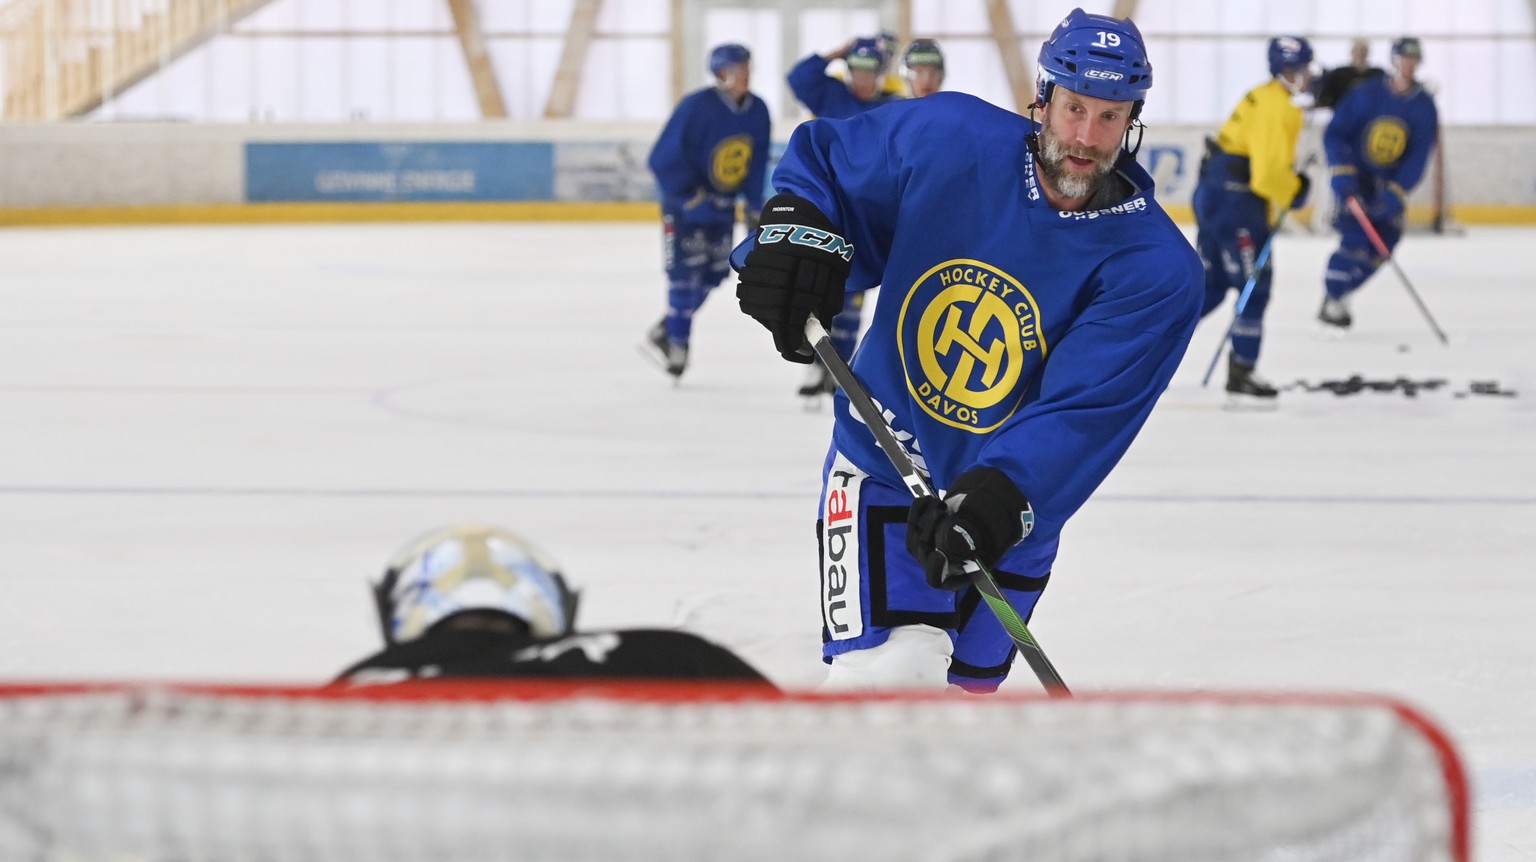 Joe Thornton, ehemaliger Spieler des HC Davos und NHL-Spieler, aufgenommen im Training, am Mittwoch, 5. August 2020, in der Trainingshalle in Davos. (KEYSTONE/Gian Ehrenzeller)